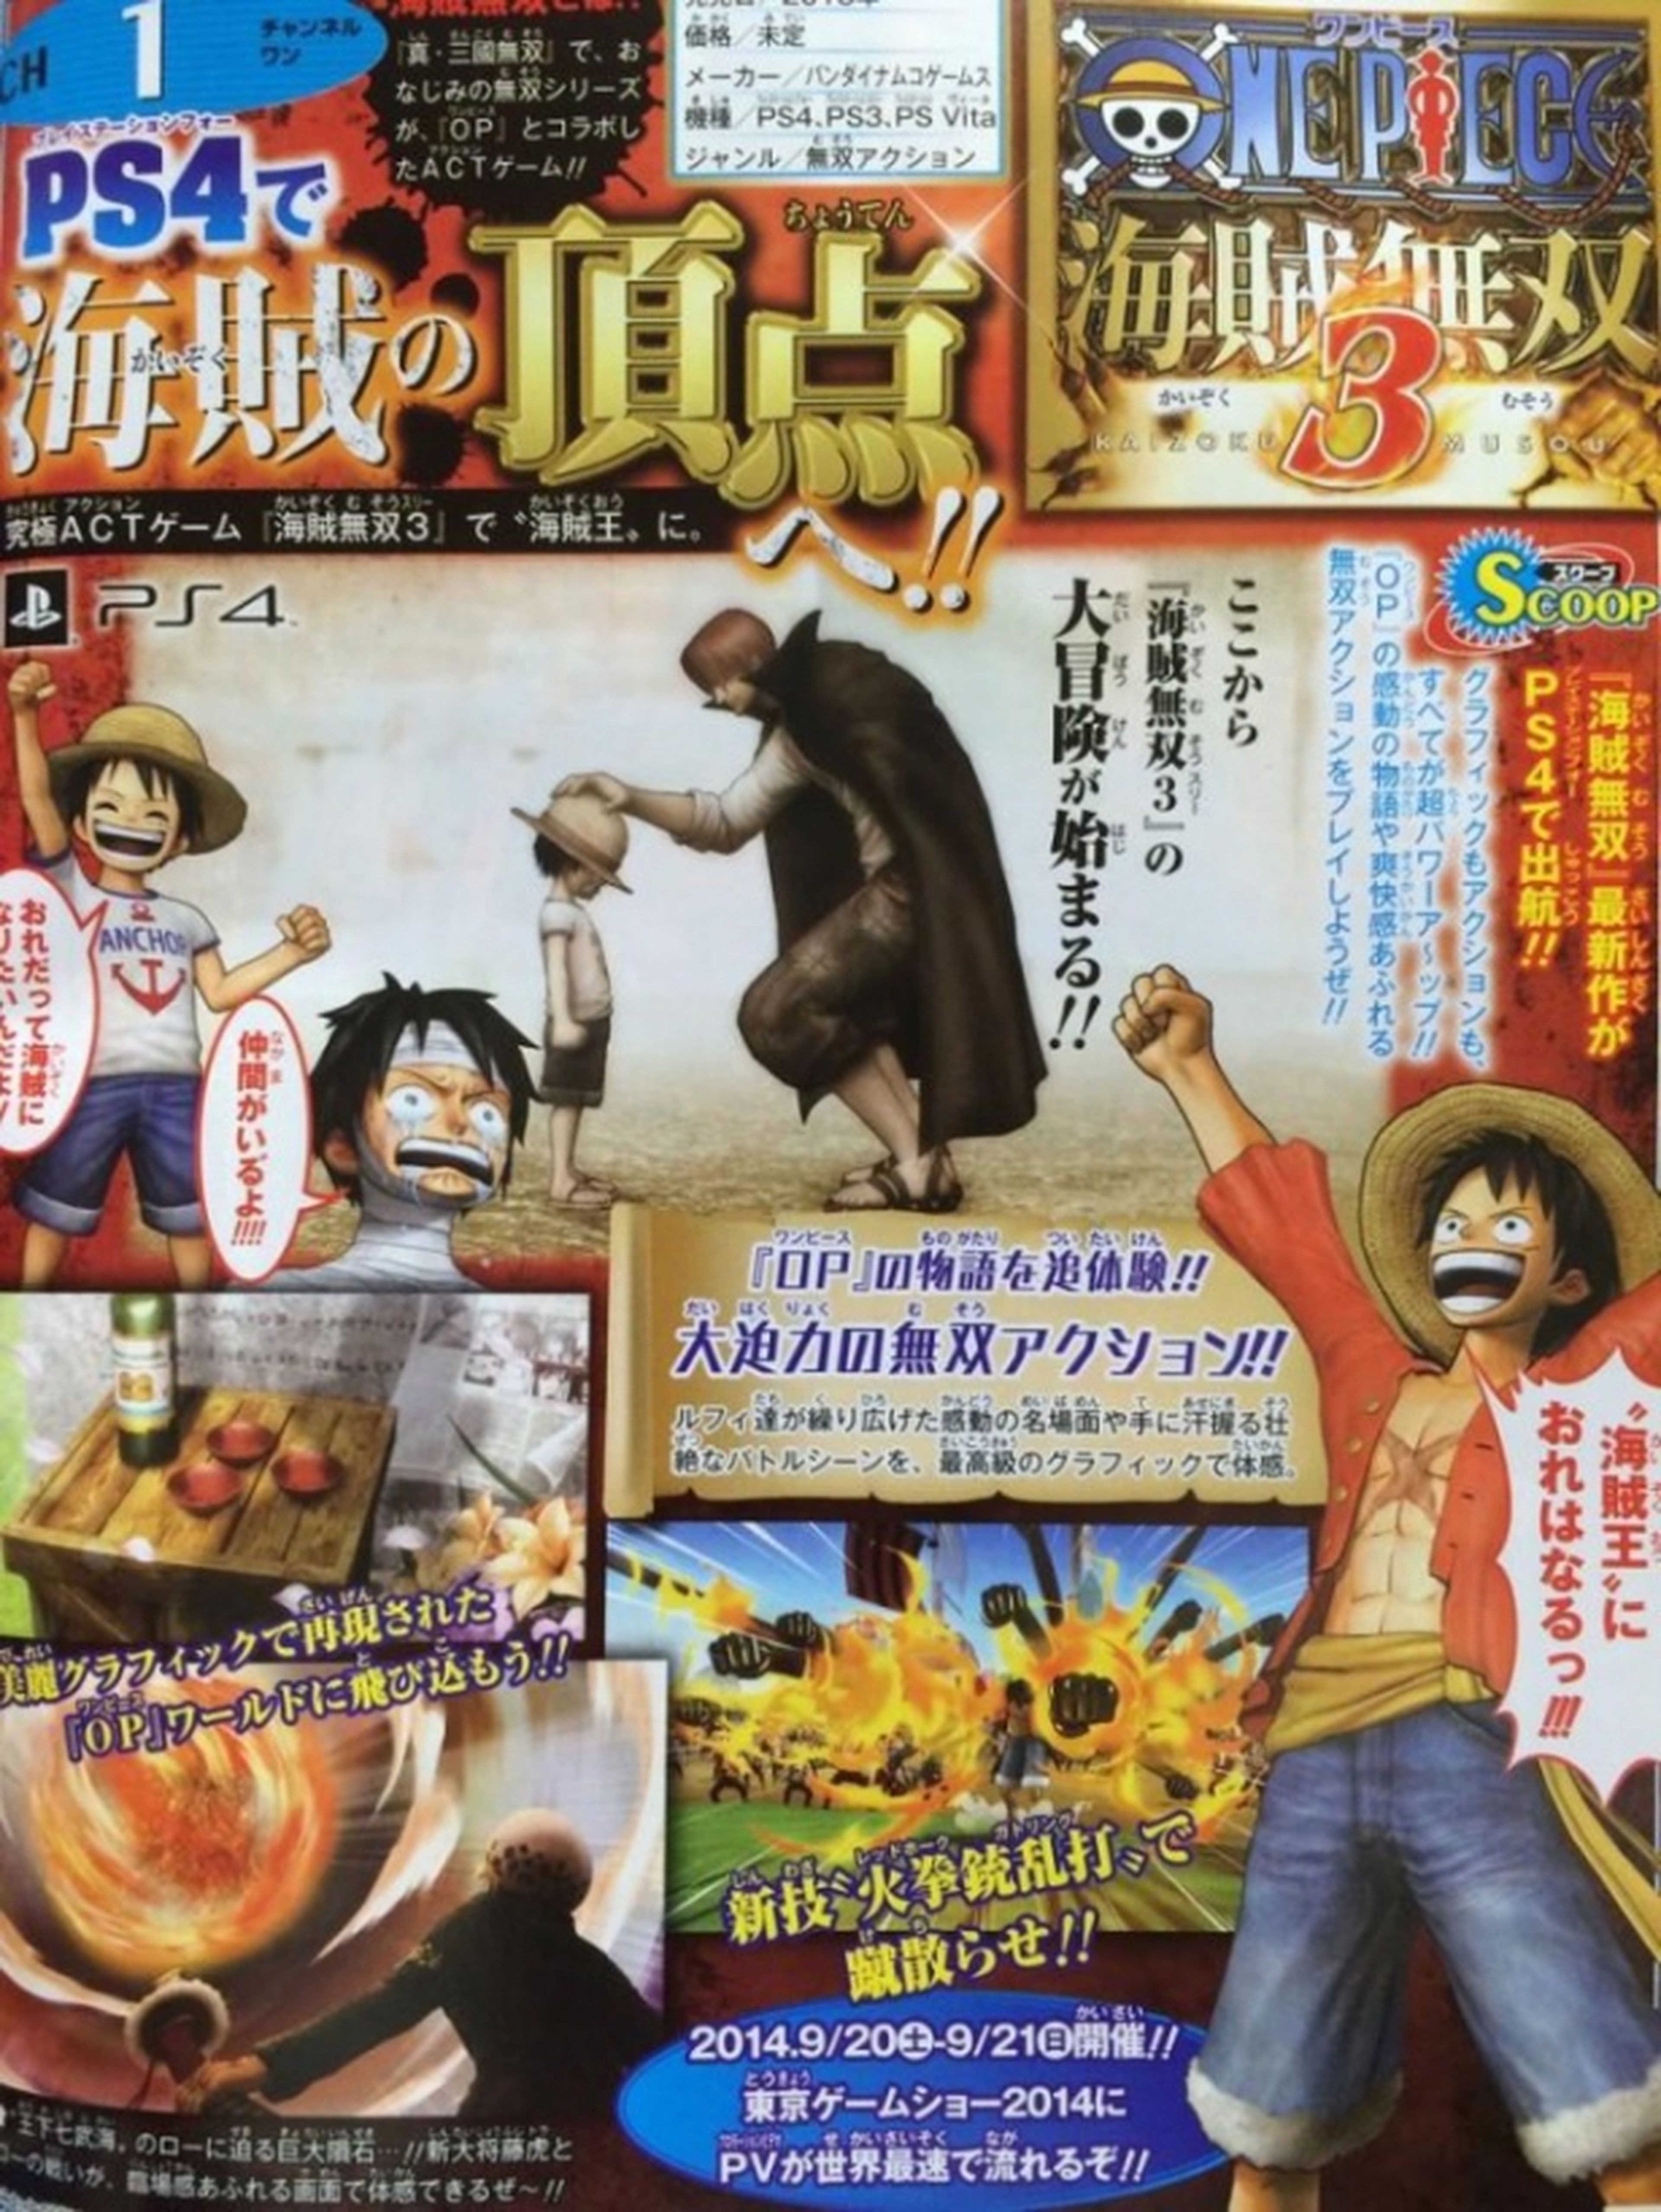 One Piece Pirate Warriors 3 anunciado para PS3, PS4 y PS Vita